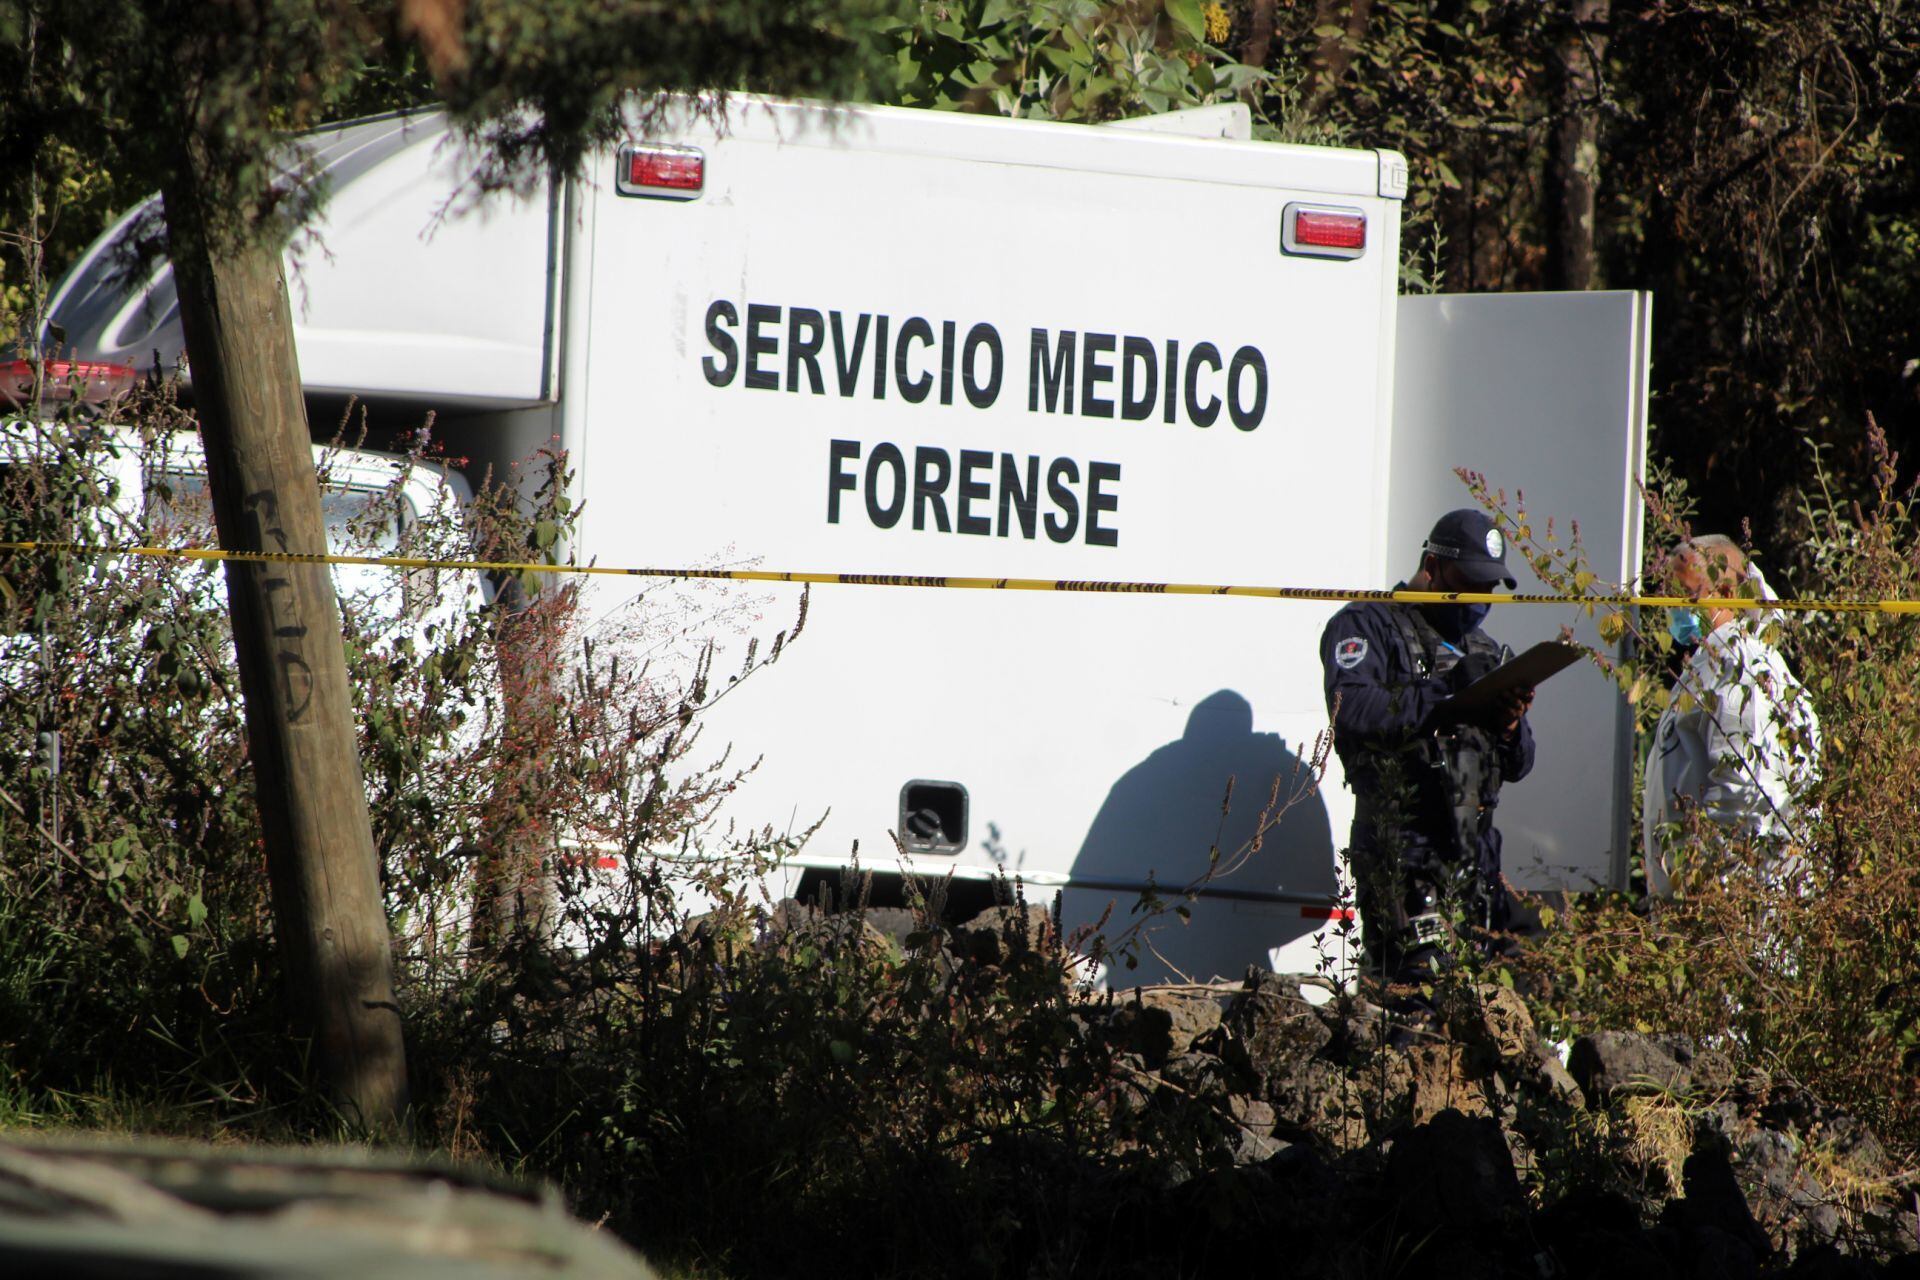 Balacera durante operativo en Azcapotzalco deja 4 muertos